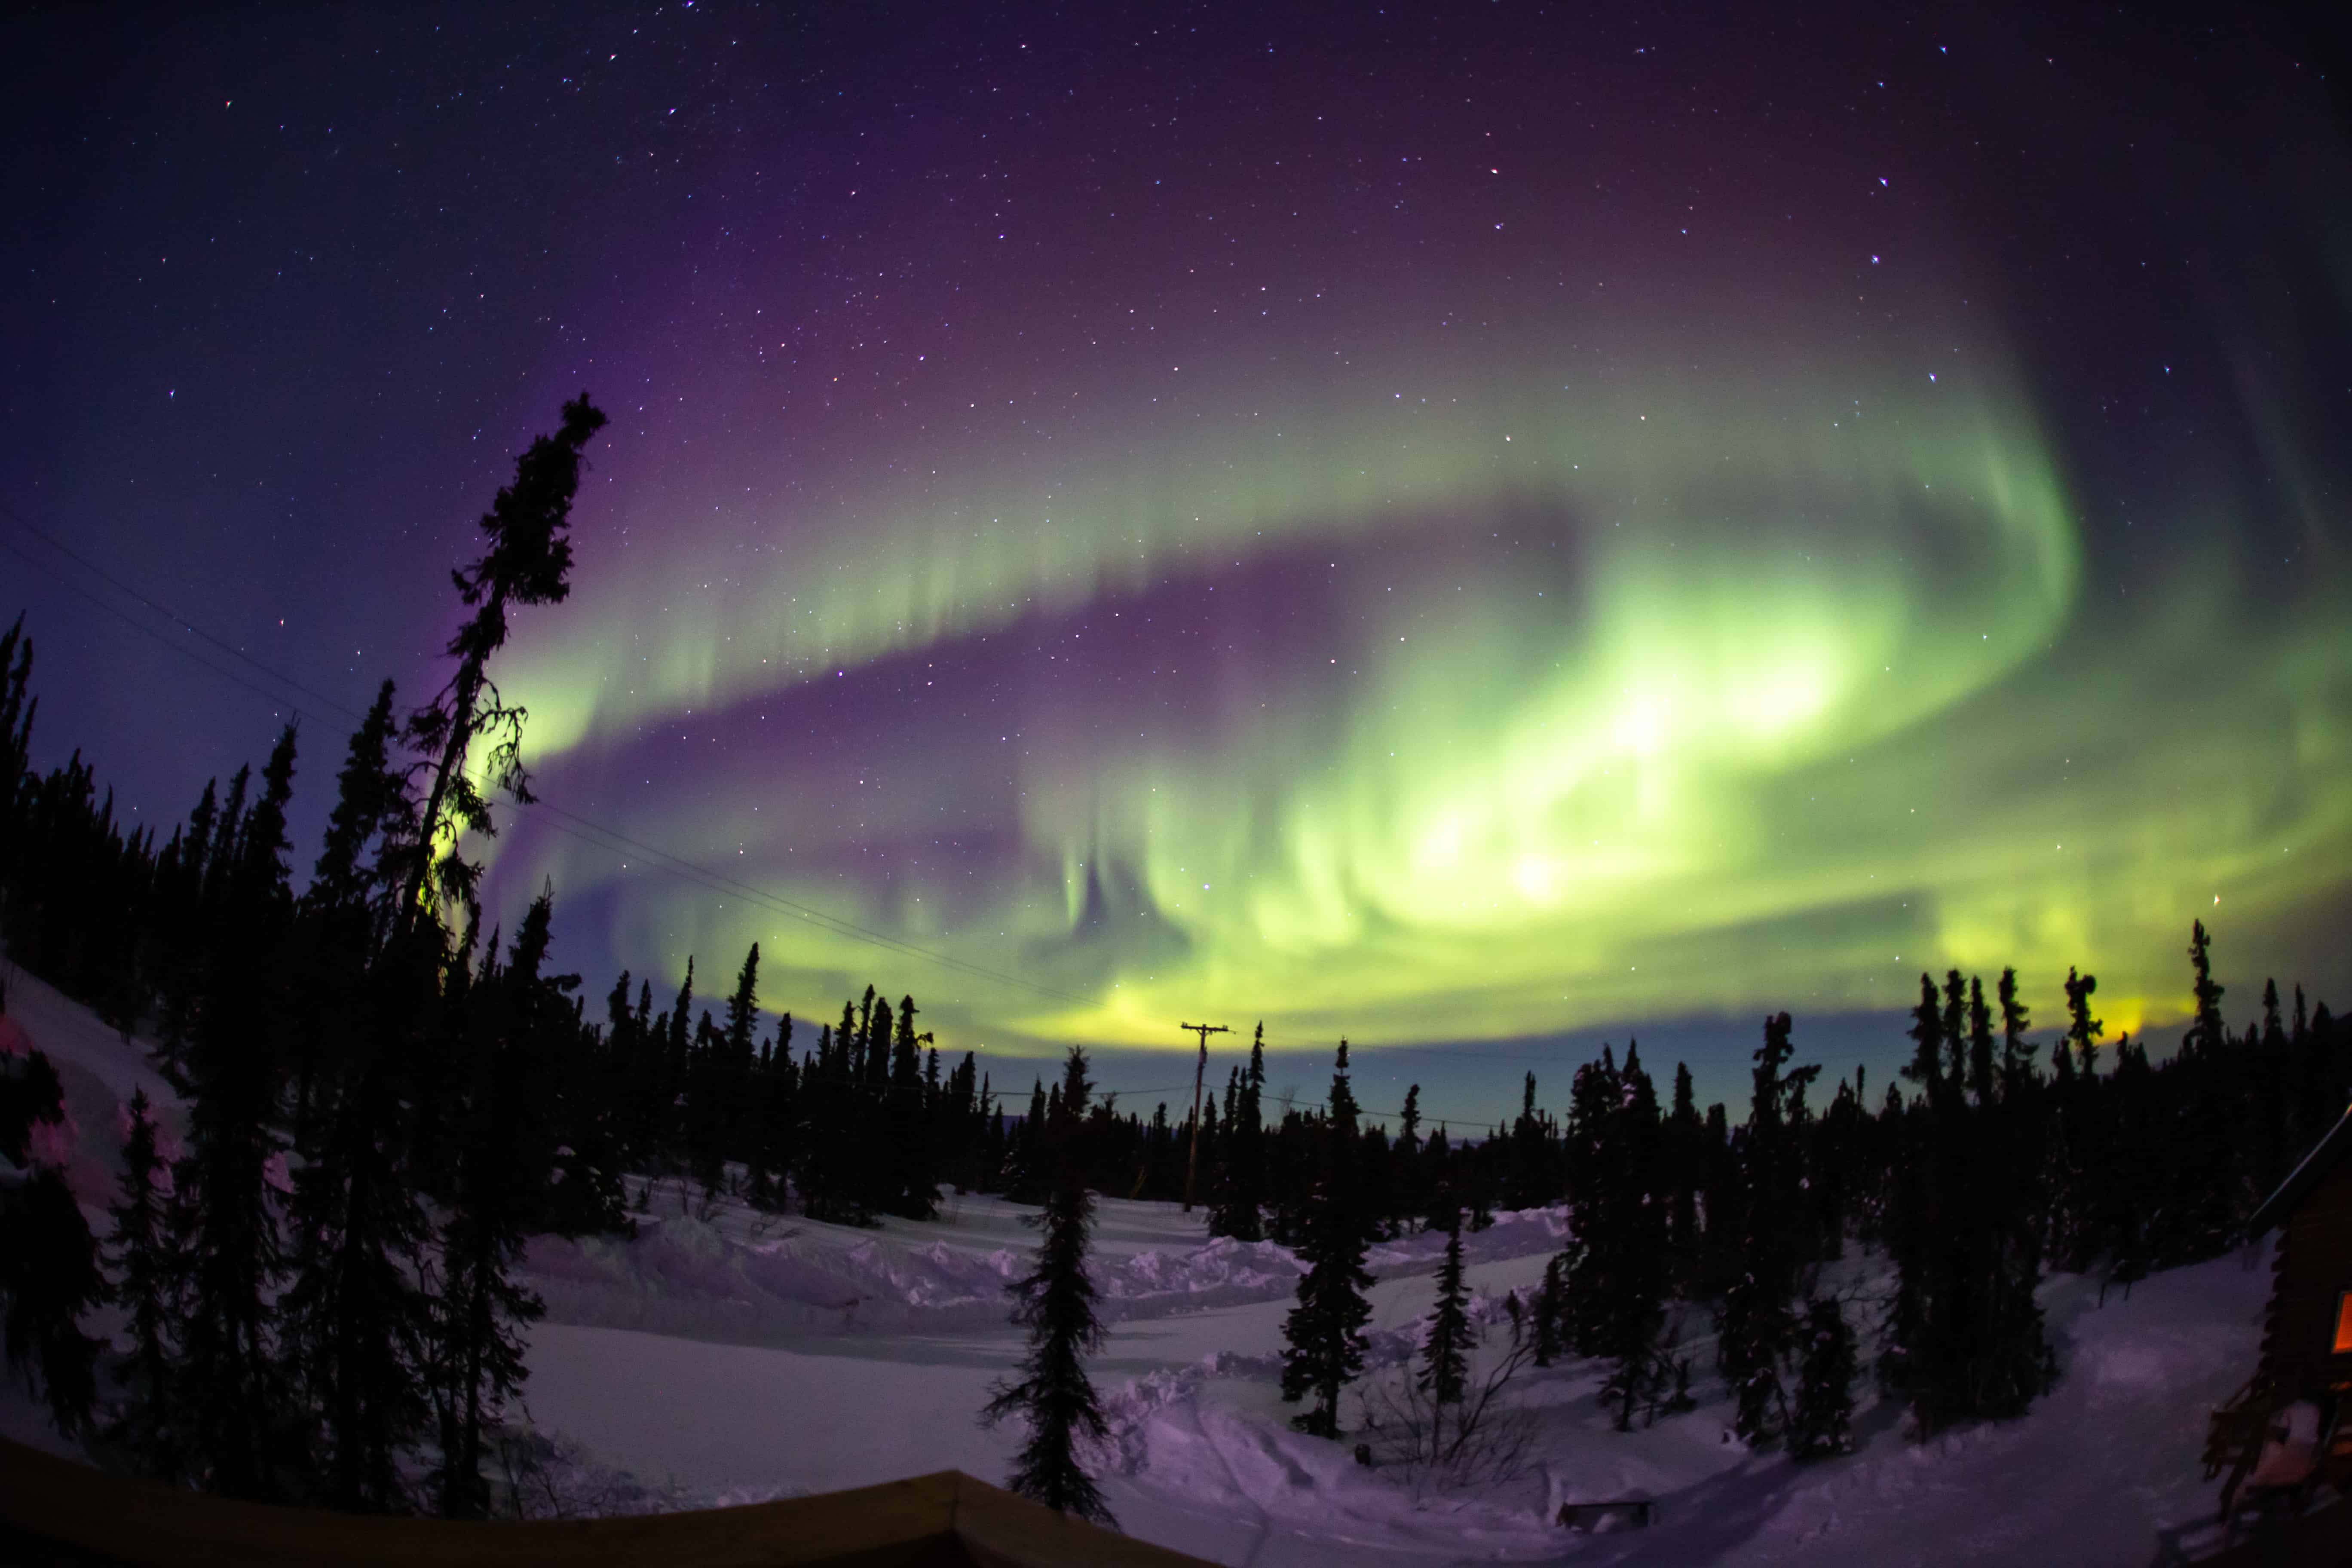 The aurora borealis near Fairbanks, AK